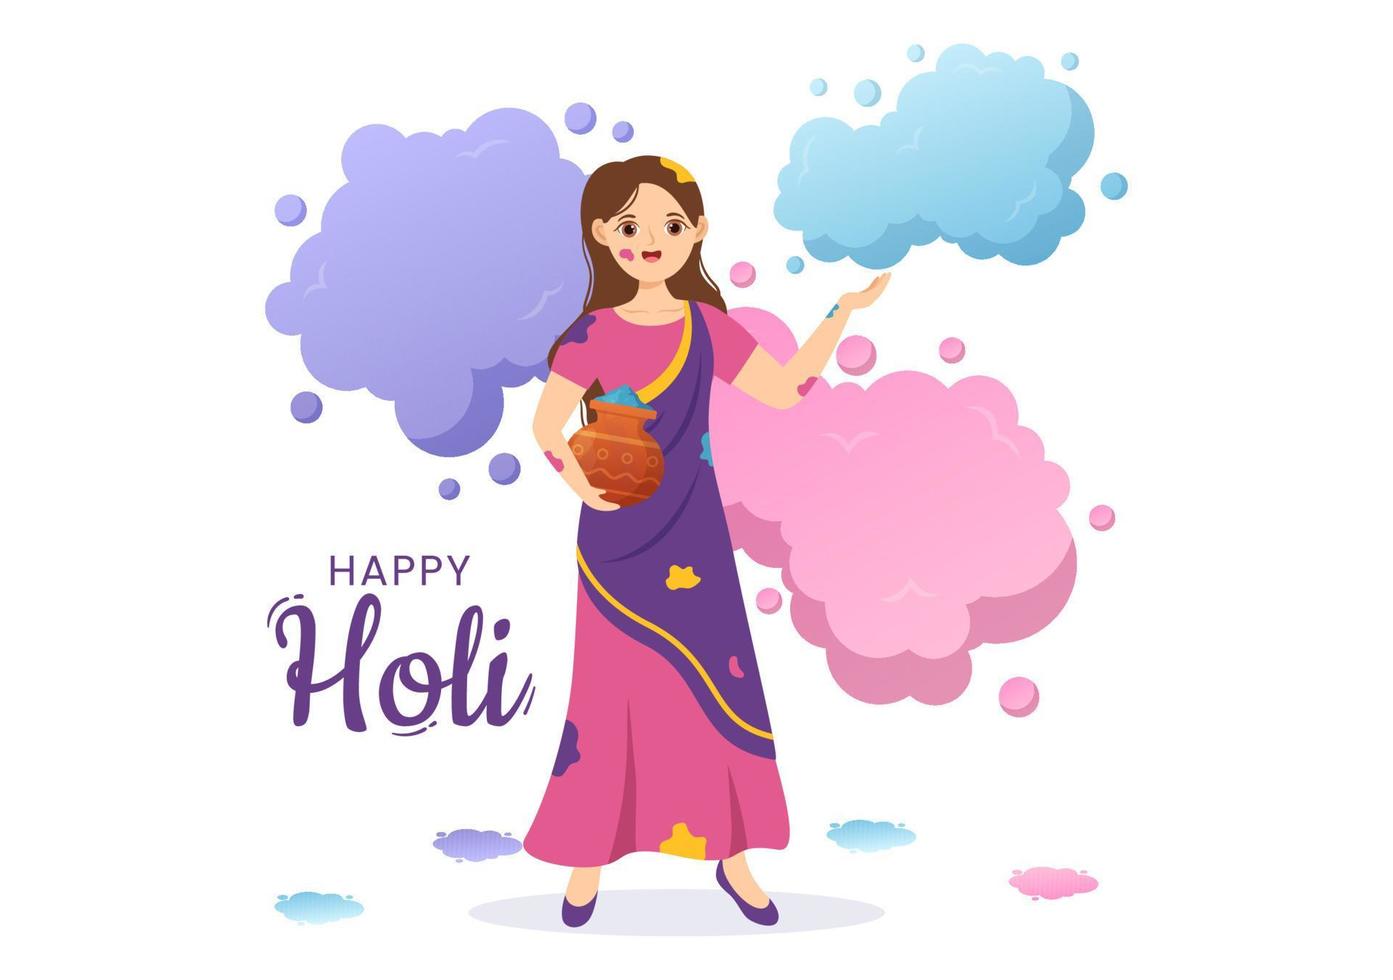 contento holi festival ilustración con vistoso maceta y polvo en hindi para web bandera o aterrizaje página en plano dibujos animados mano dibujado plantillas vector